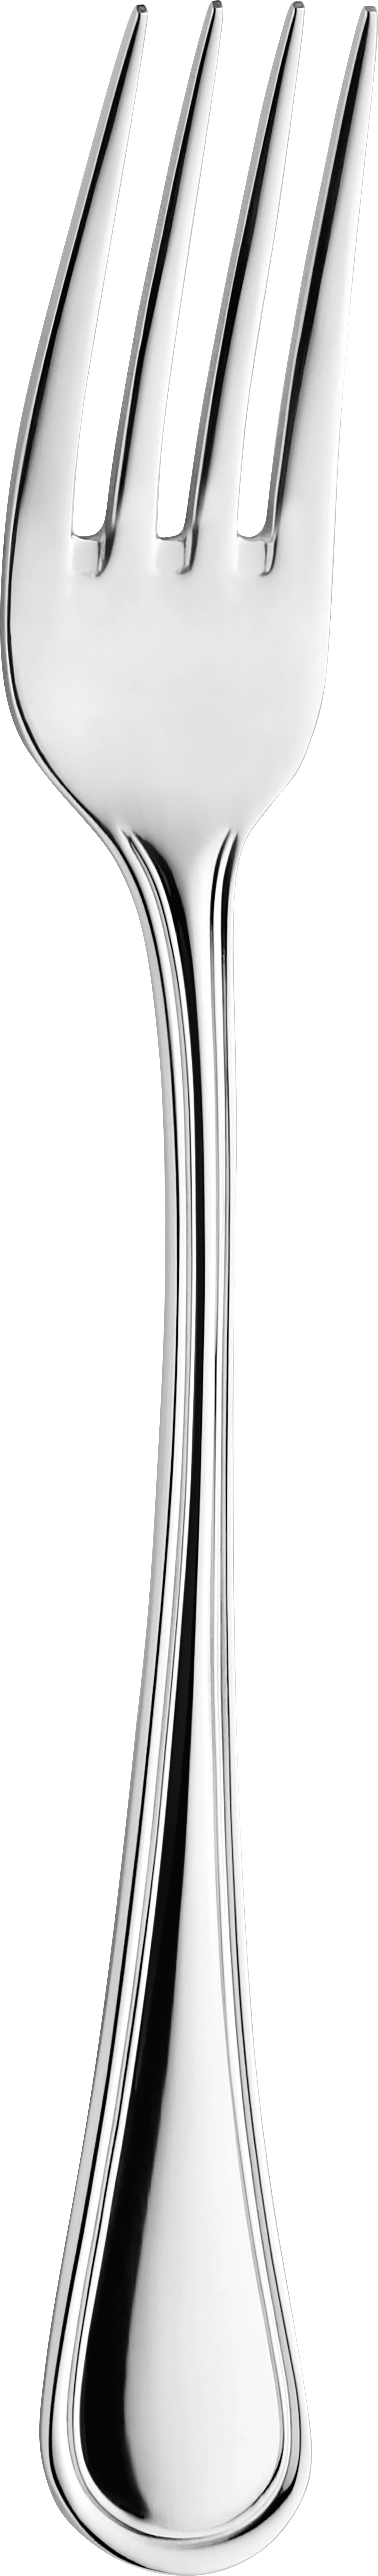 Amefa Haydn Morrow spisegaffel, 20,3 cm